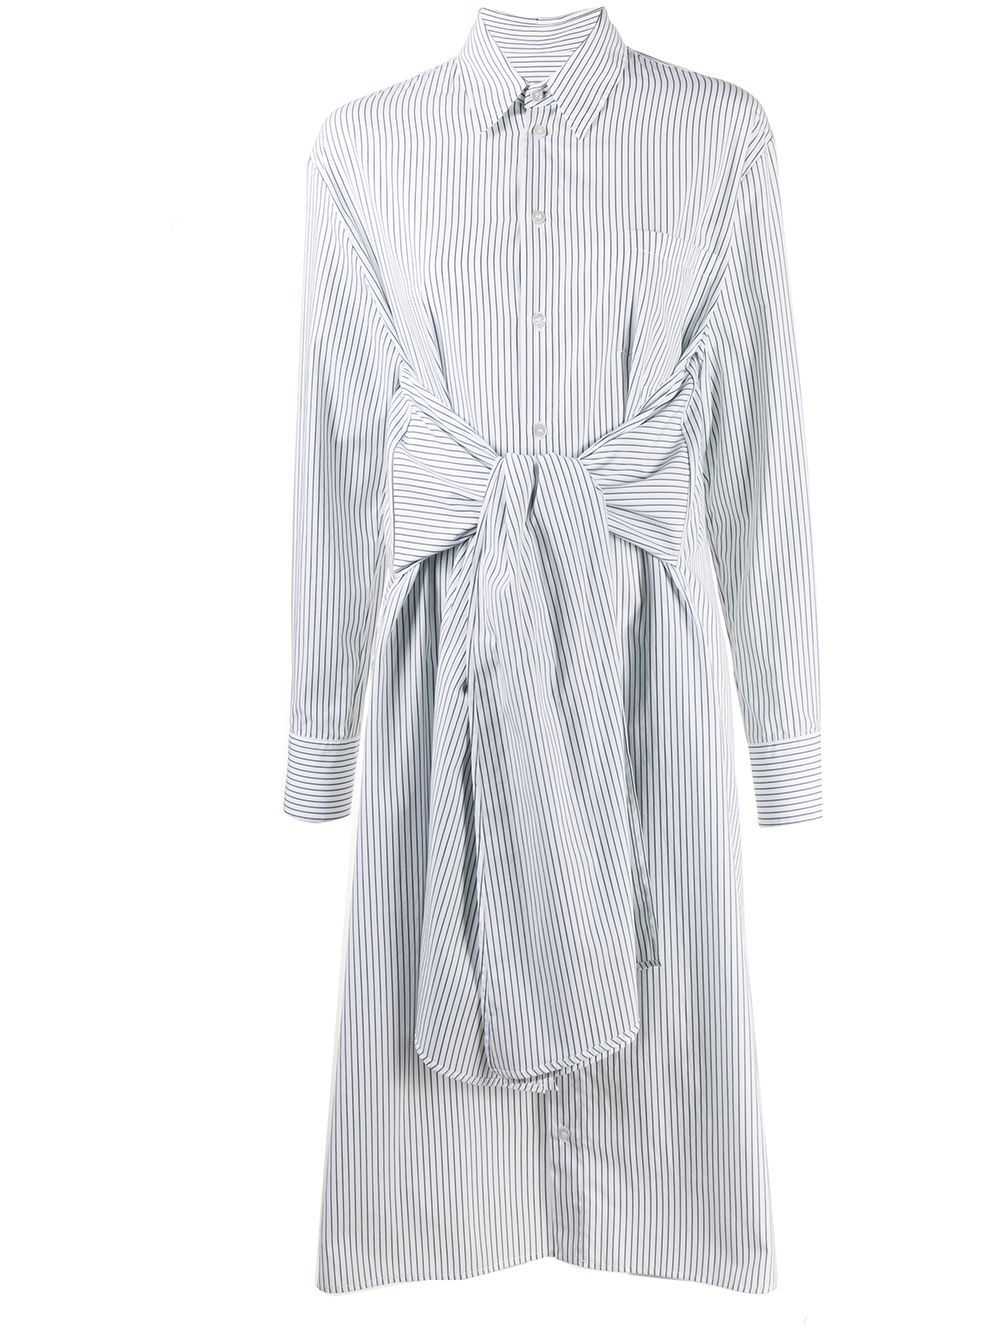 фото Mm6 maison margiela платье-рубашка с поясом на завязке